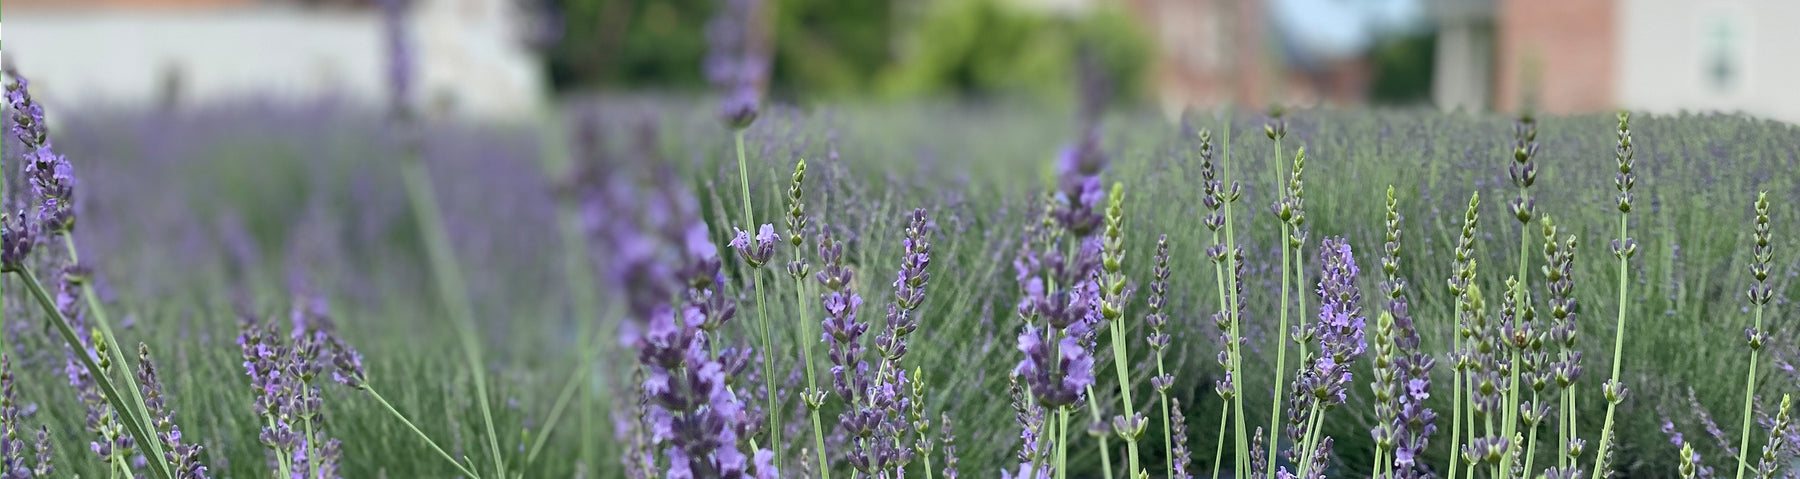 Lavender Field of Dreams